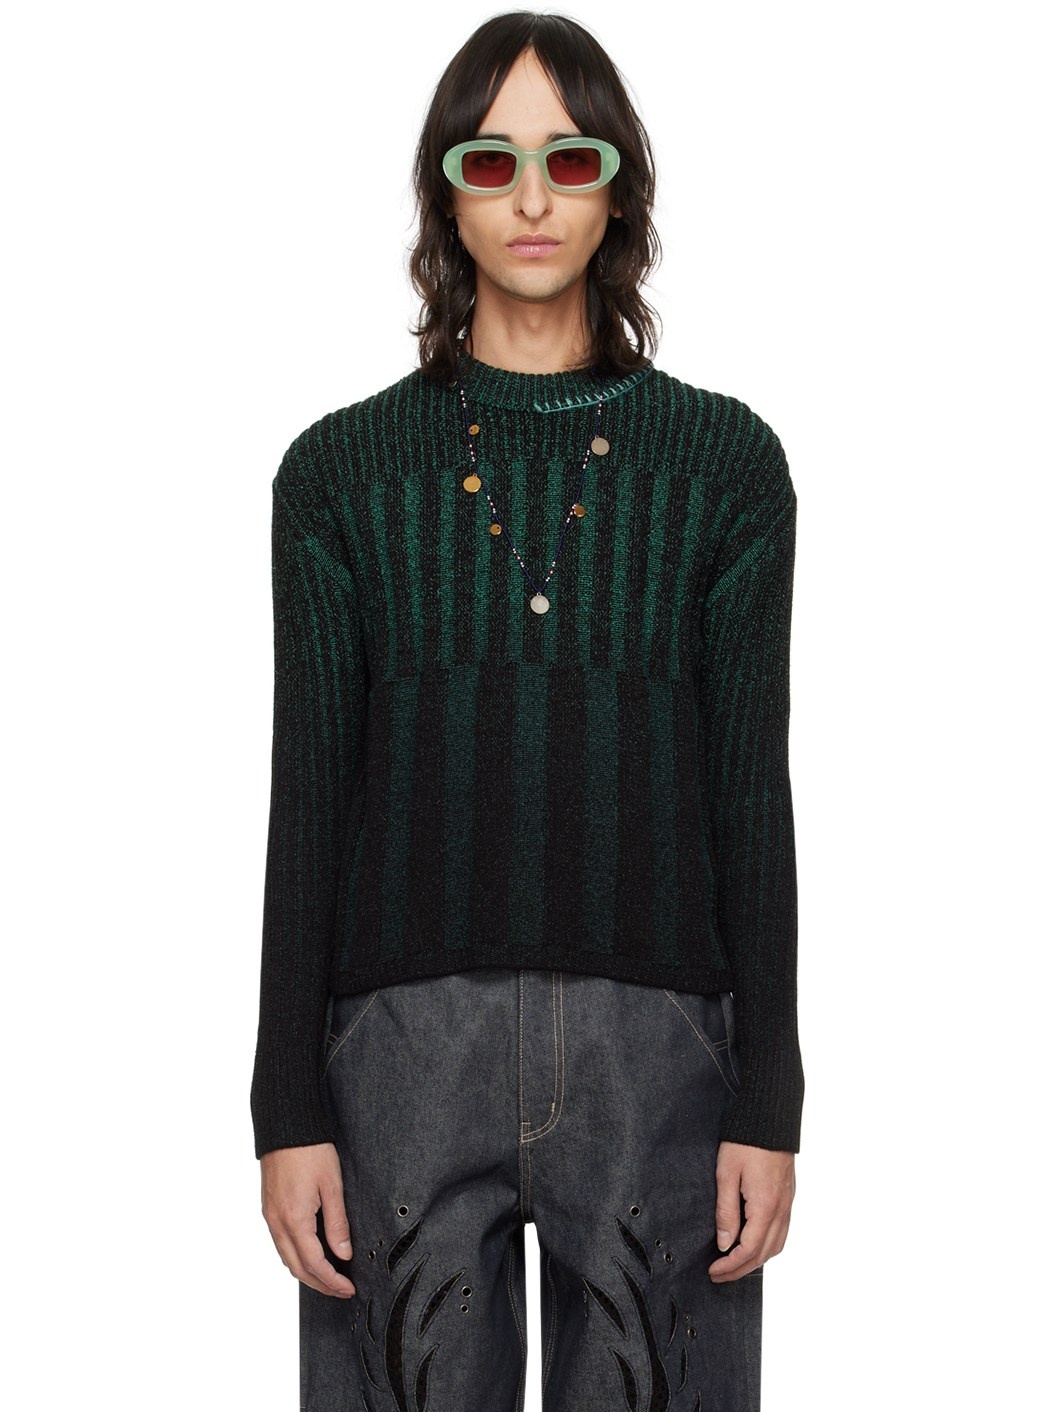 Black & Green Woosoo Sweater - 1